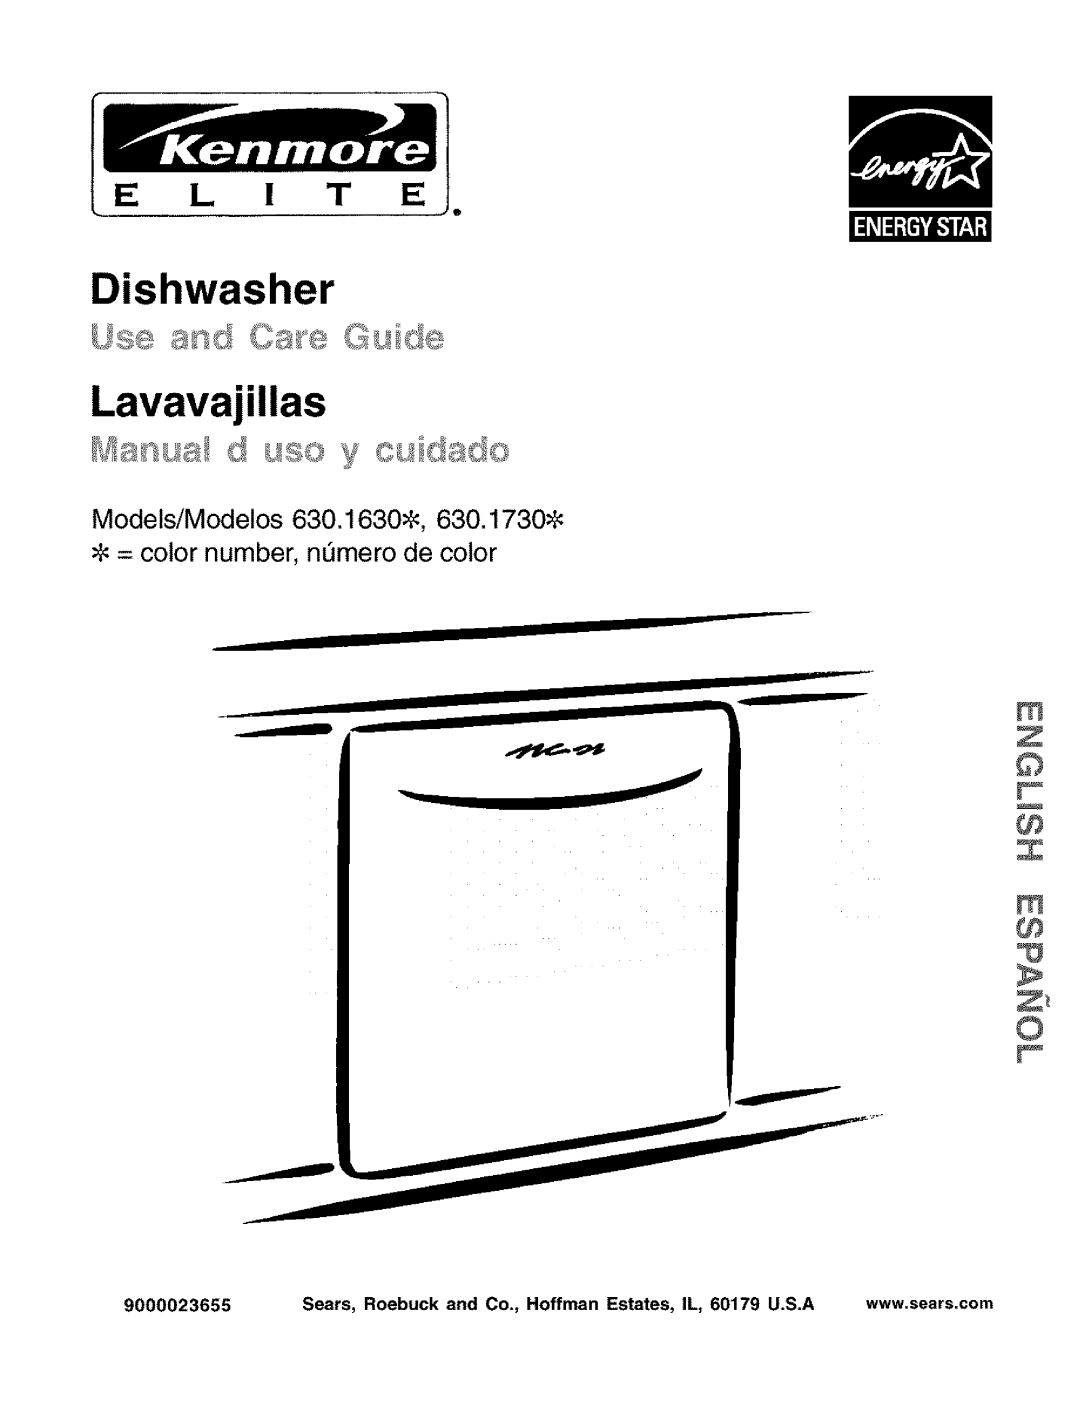 Kenmore 630.1630, 630.1730 manual E L ! T E, Dishwasher Lavavajillas, wWw.sears.com 